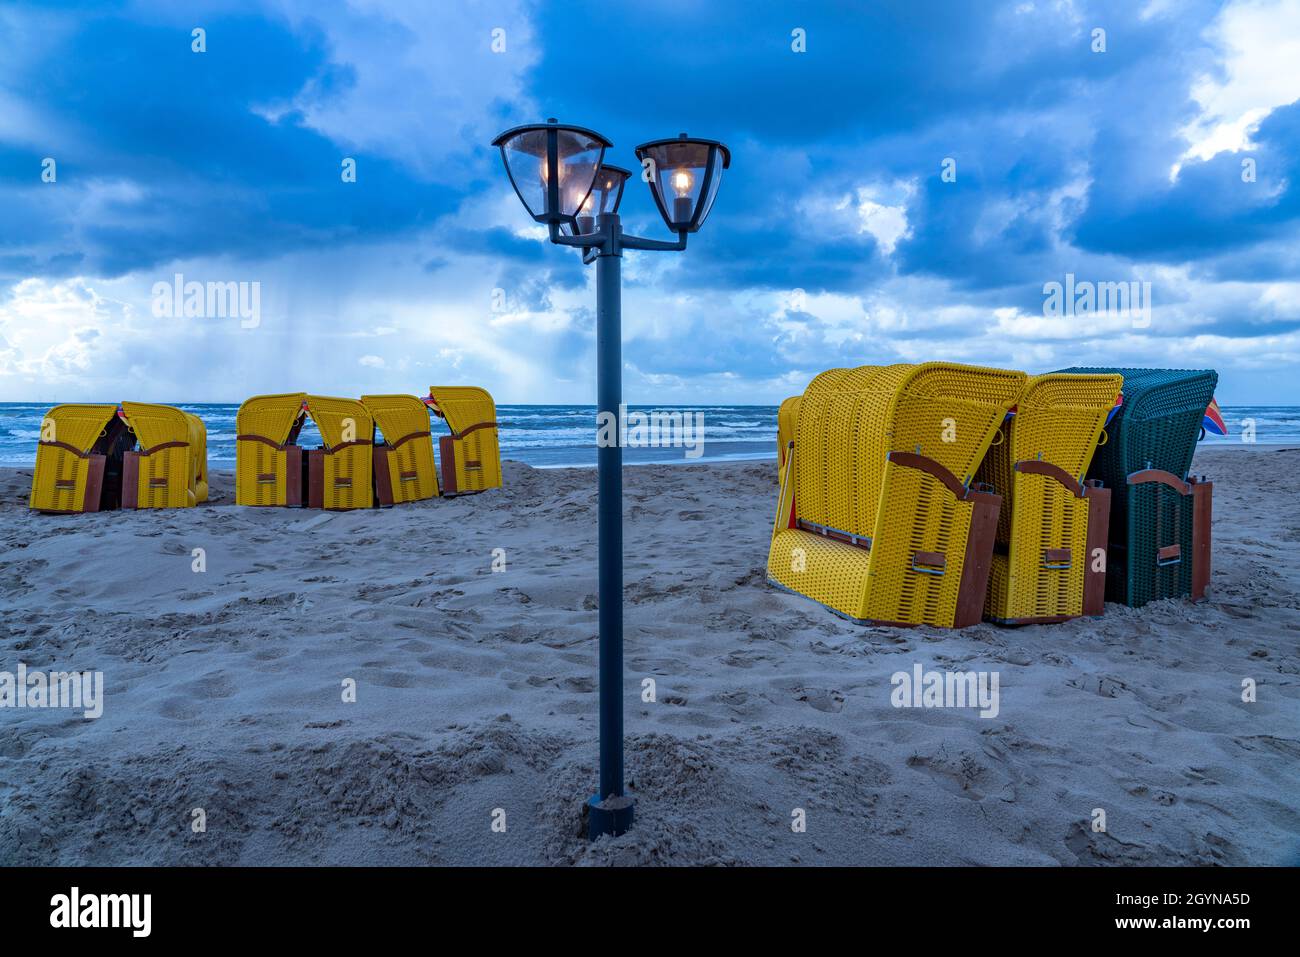 Ende der Saison am Strand, dunkle Sturmwolken, raues Meer, Herbst an der Nordsee in Nordholland, in der Nähe der Stadt Egmond aan Zee, Liegestühle Stockfoto